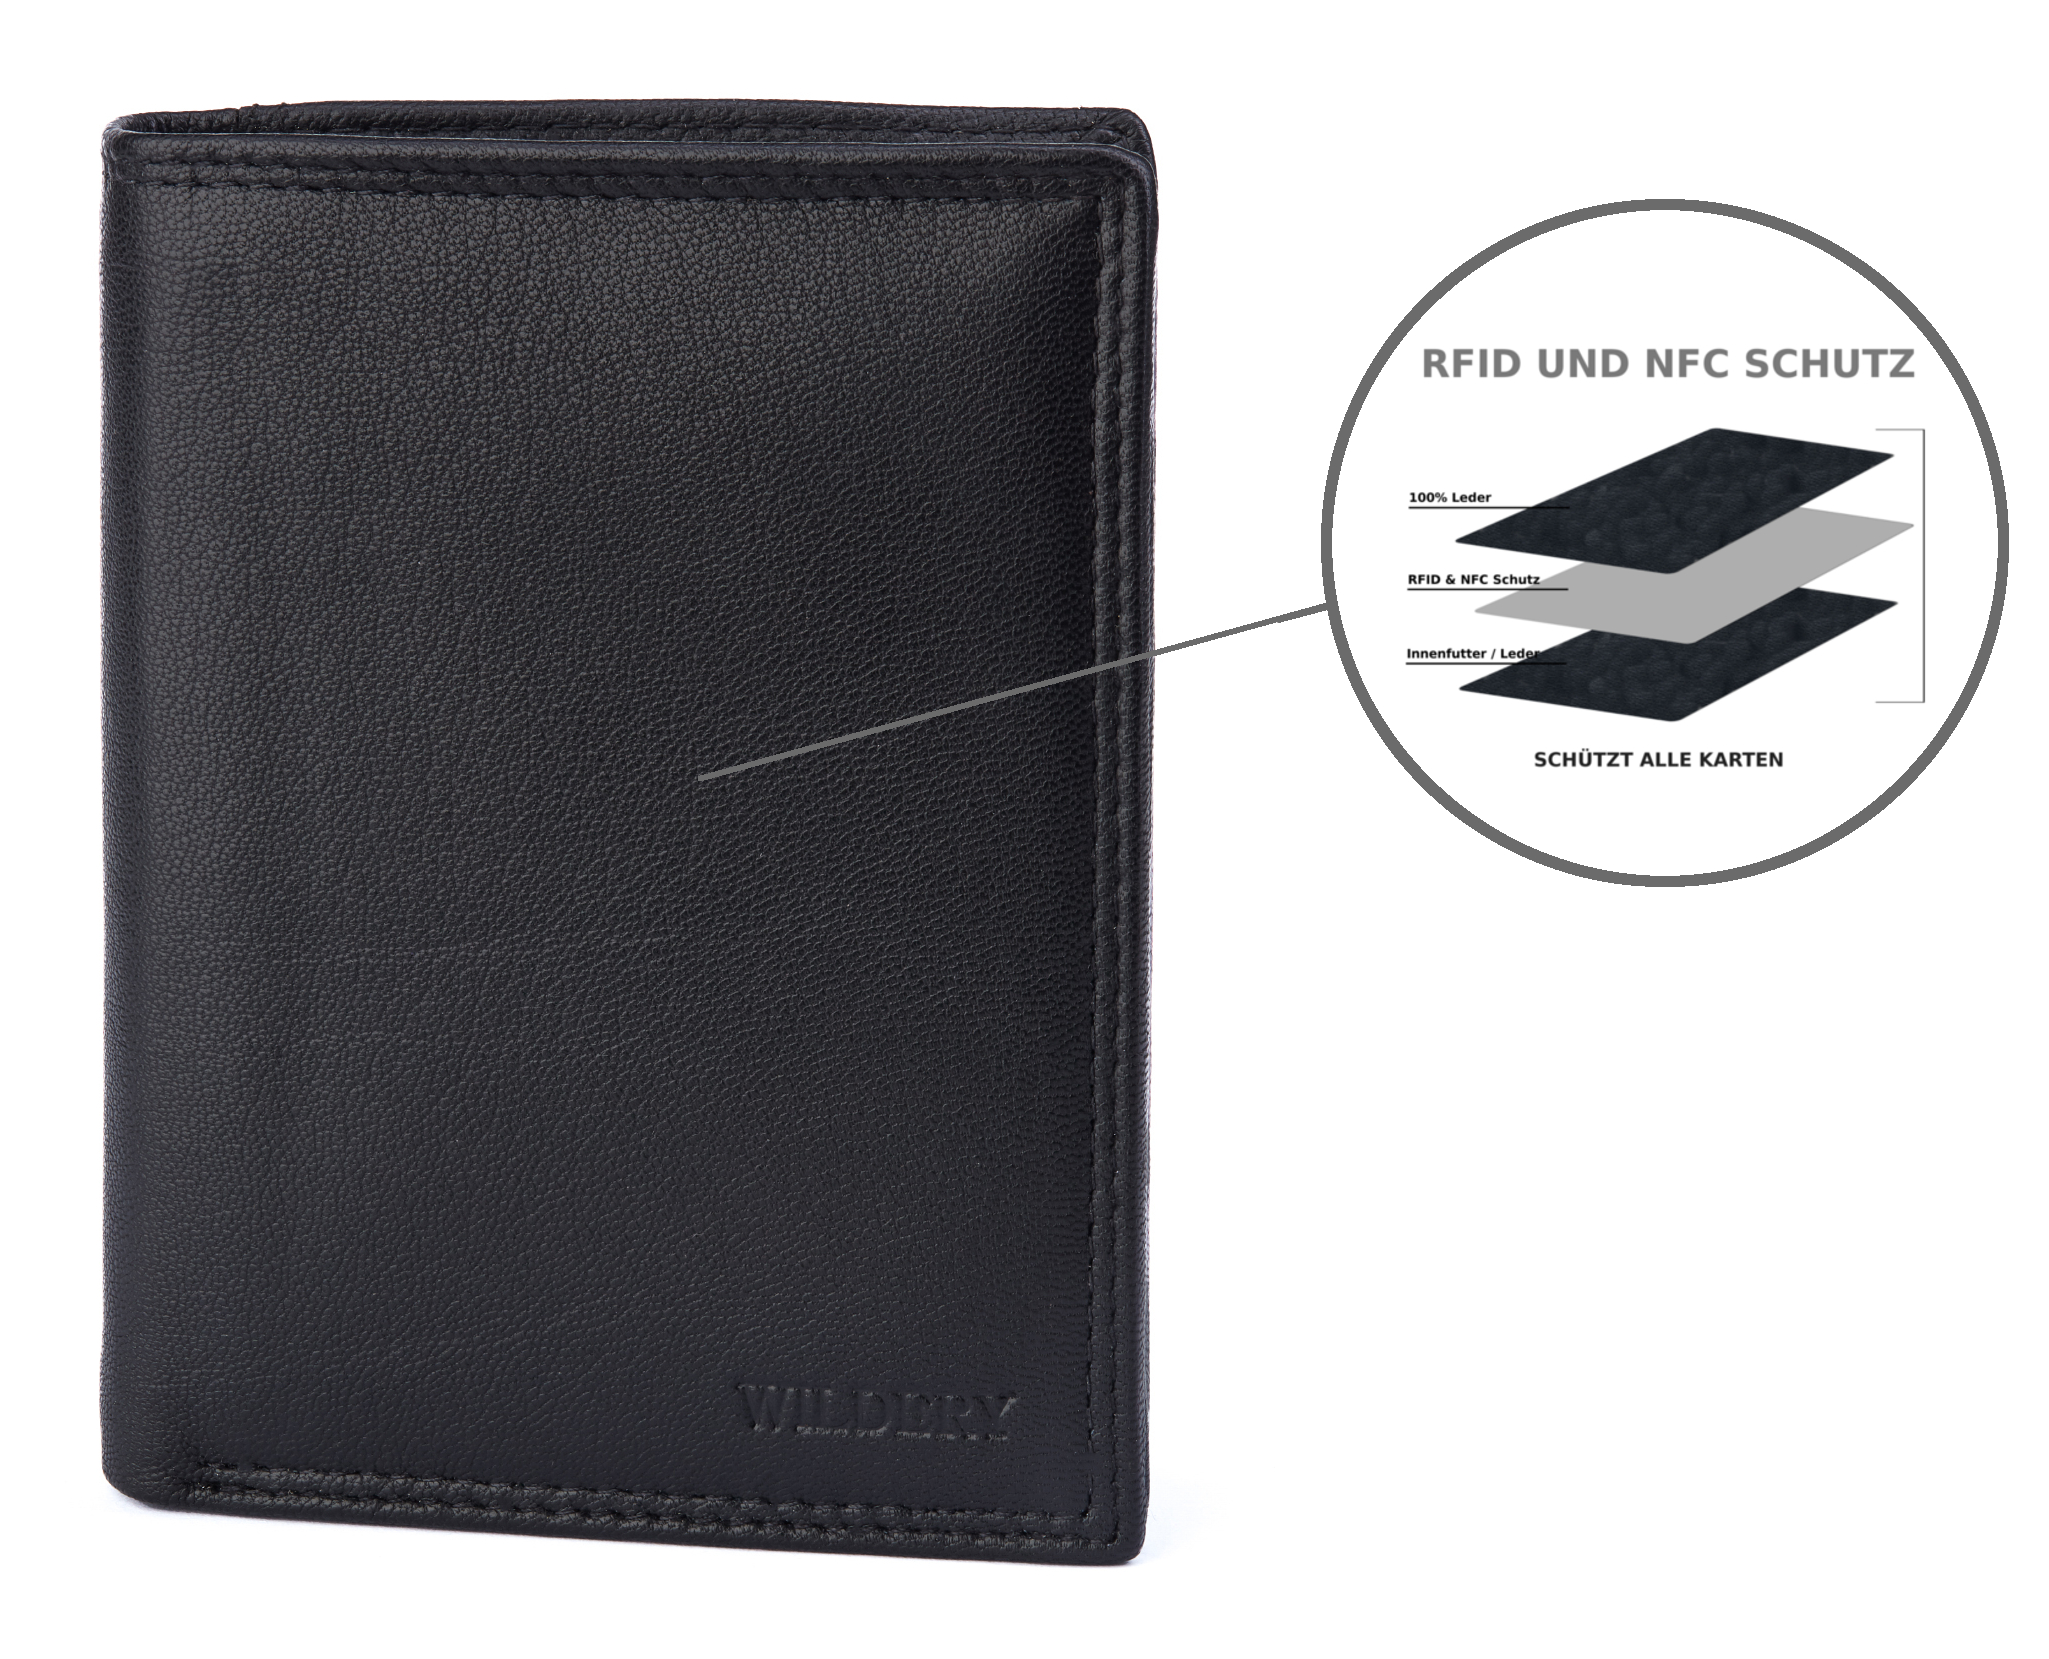 Herren Geldbörse mit RFID und NFC Schutz im Hochformat in schlichtem schwarz